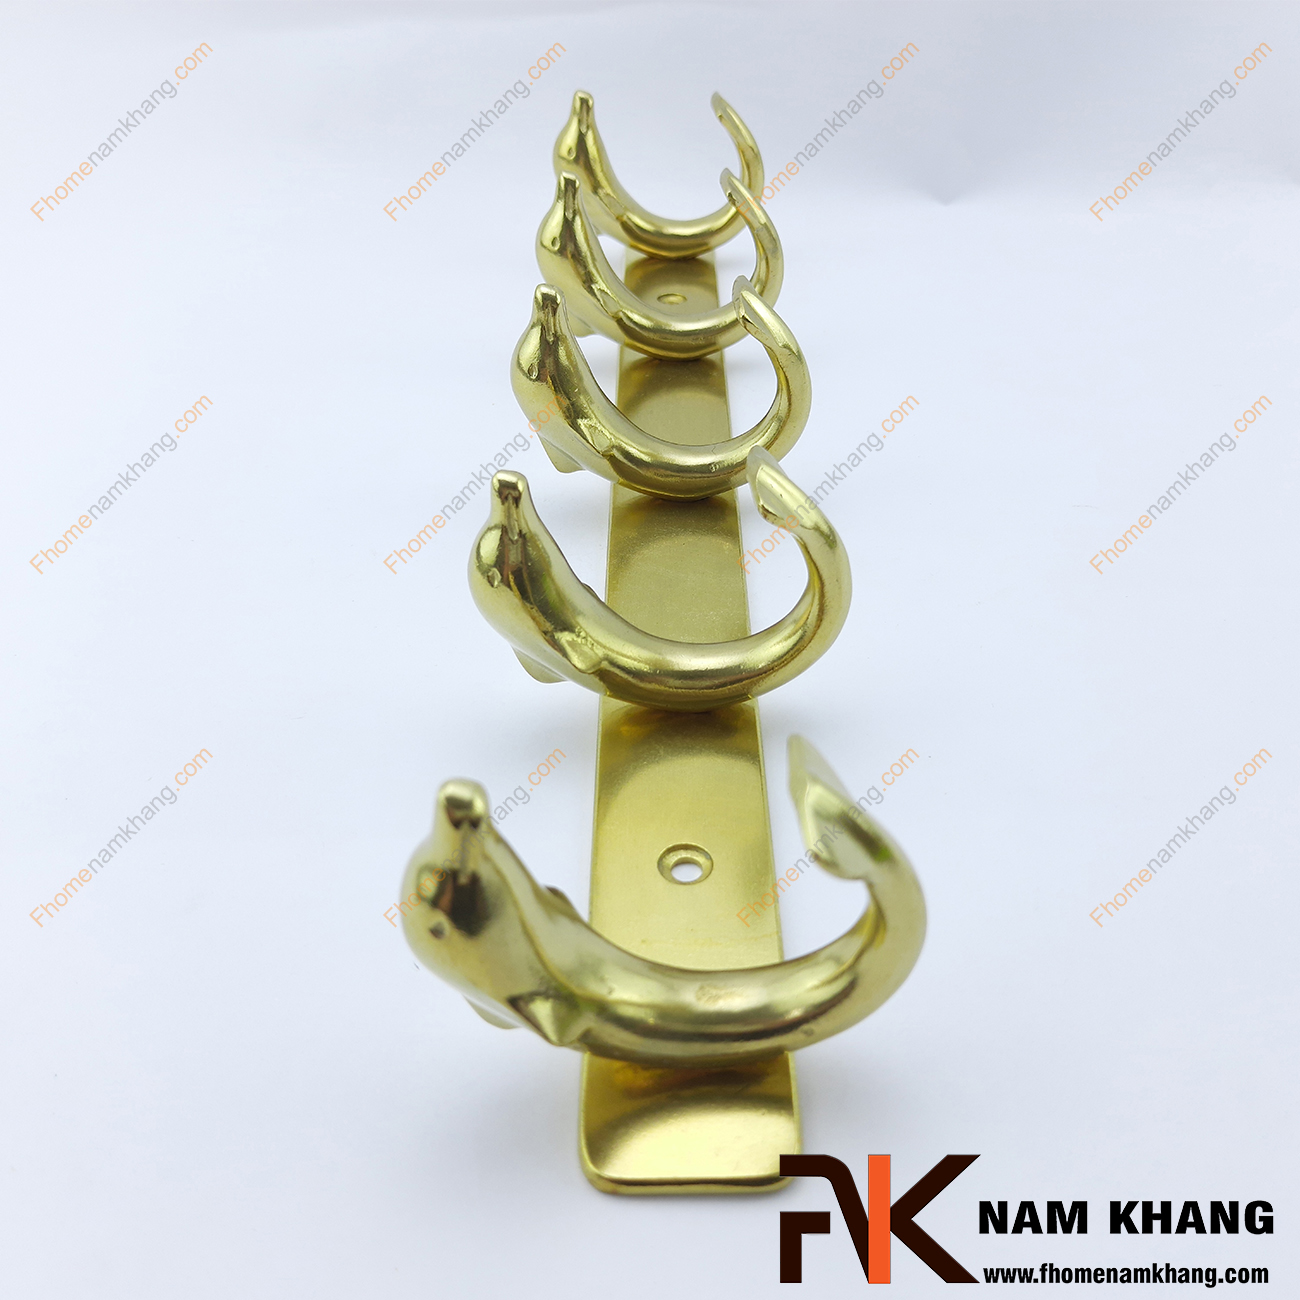 Móc treo bằng đồng vàng NKD076 là một thiết kế móc treo cao cấp khi sử dụng nét nổi bật là 5 chú cá heo được đúc áp lực cao từ đồng cao cấp.